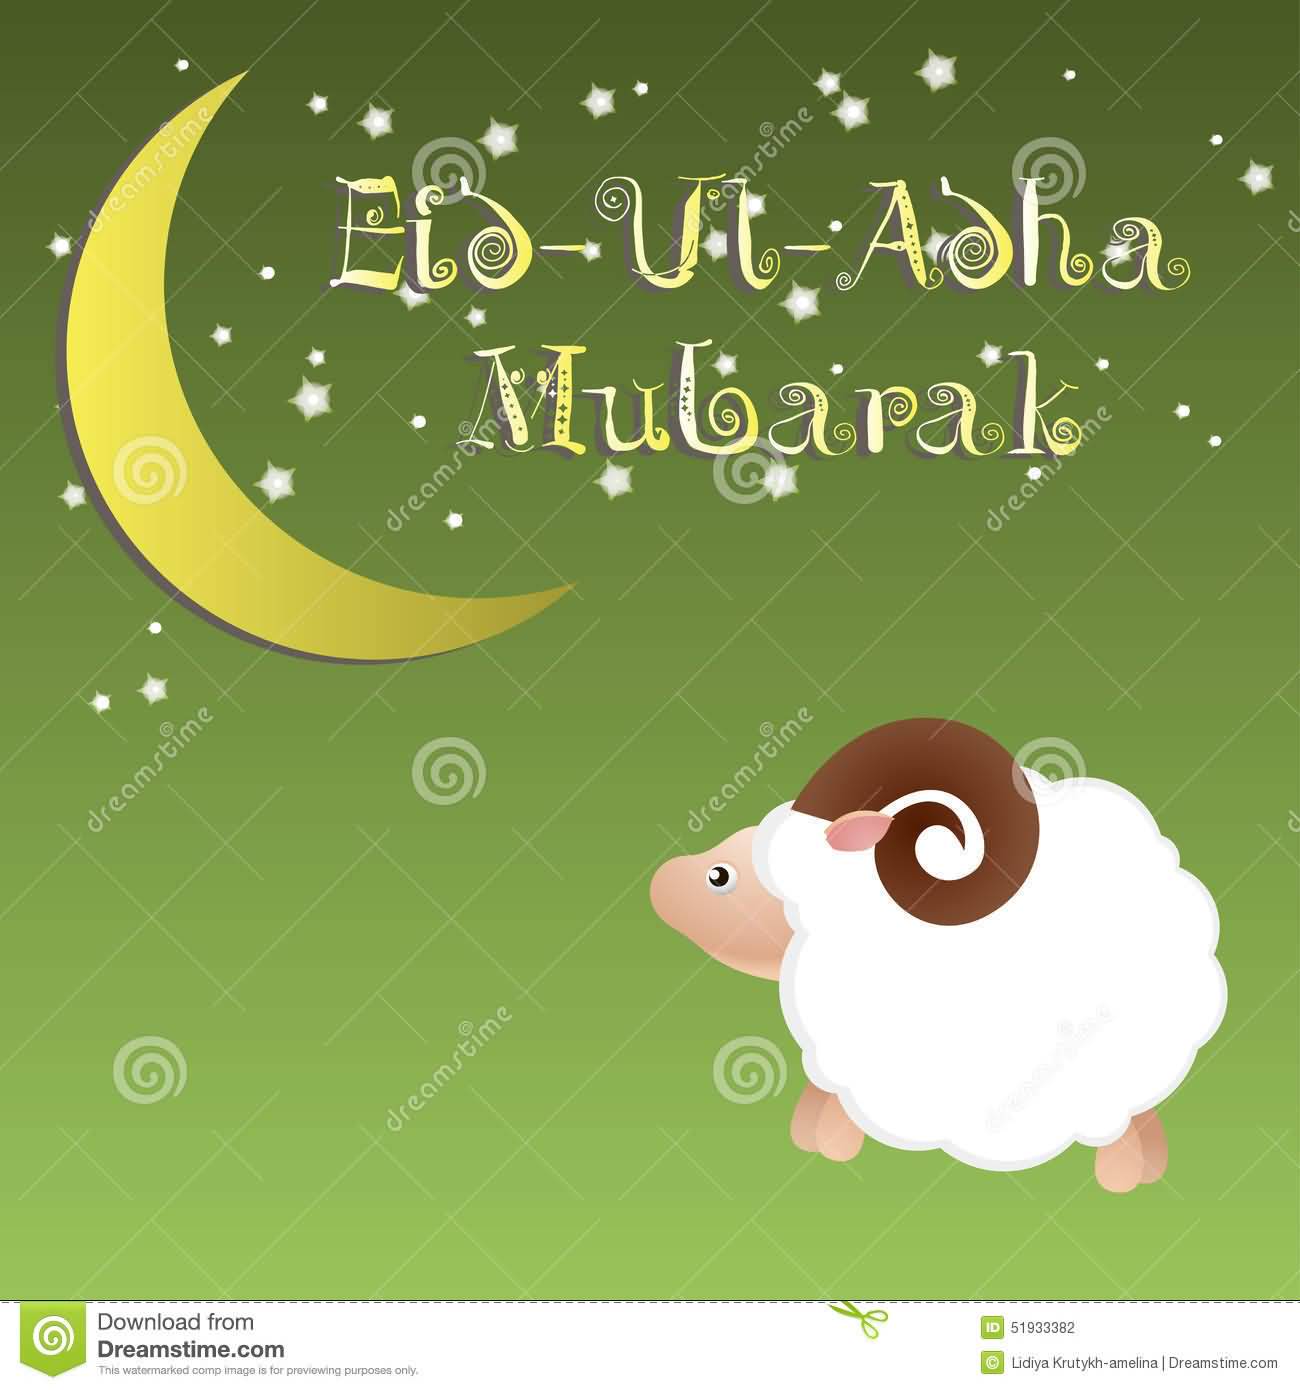 Eid Al-Adha 2016 Mubarak Greeting Card